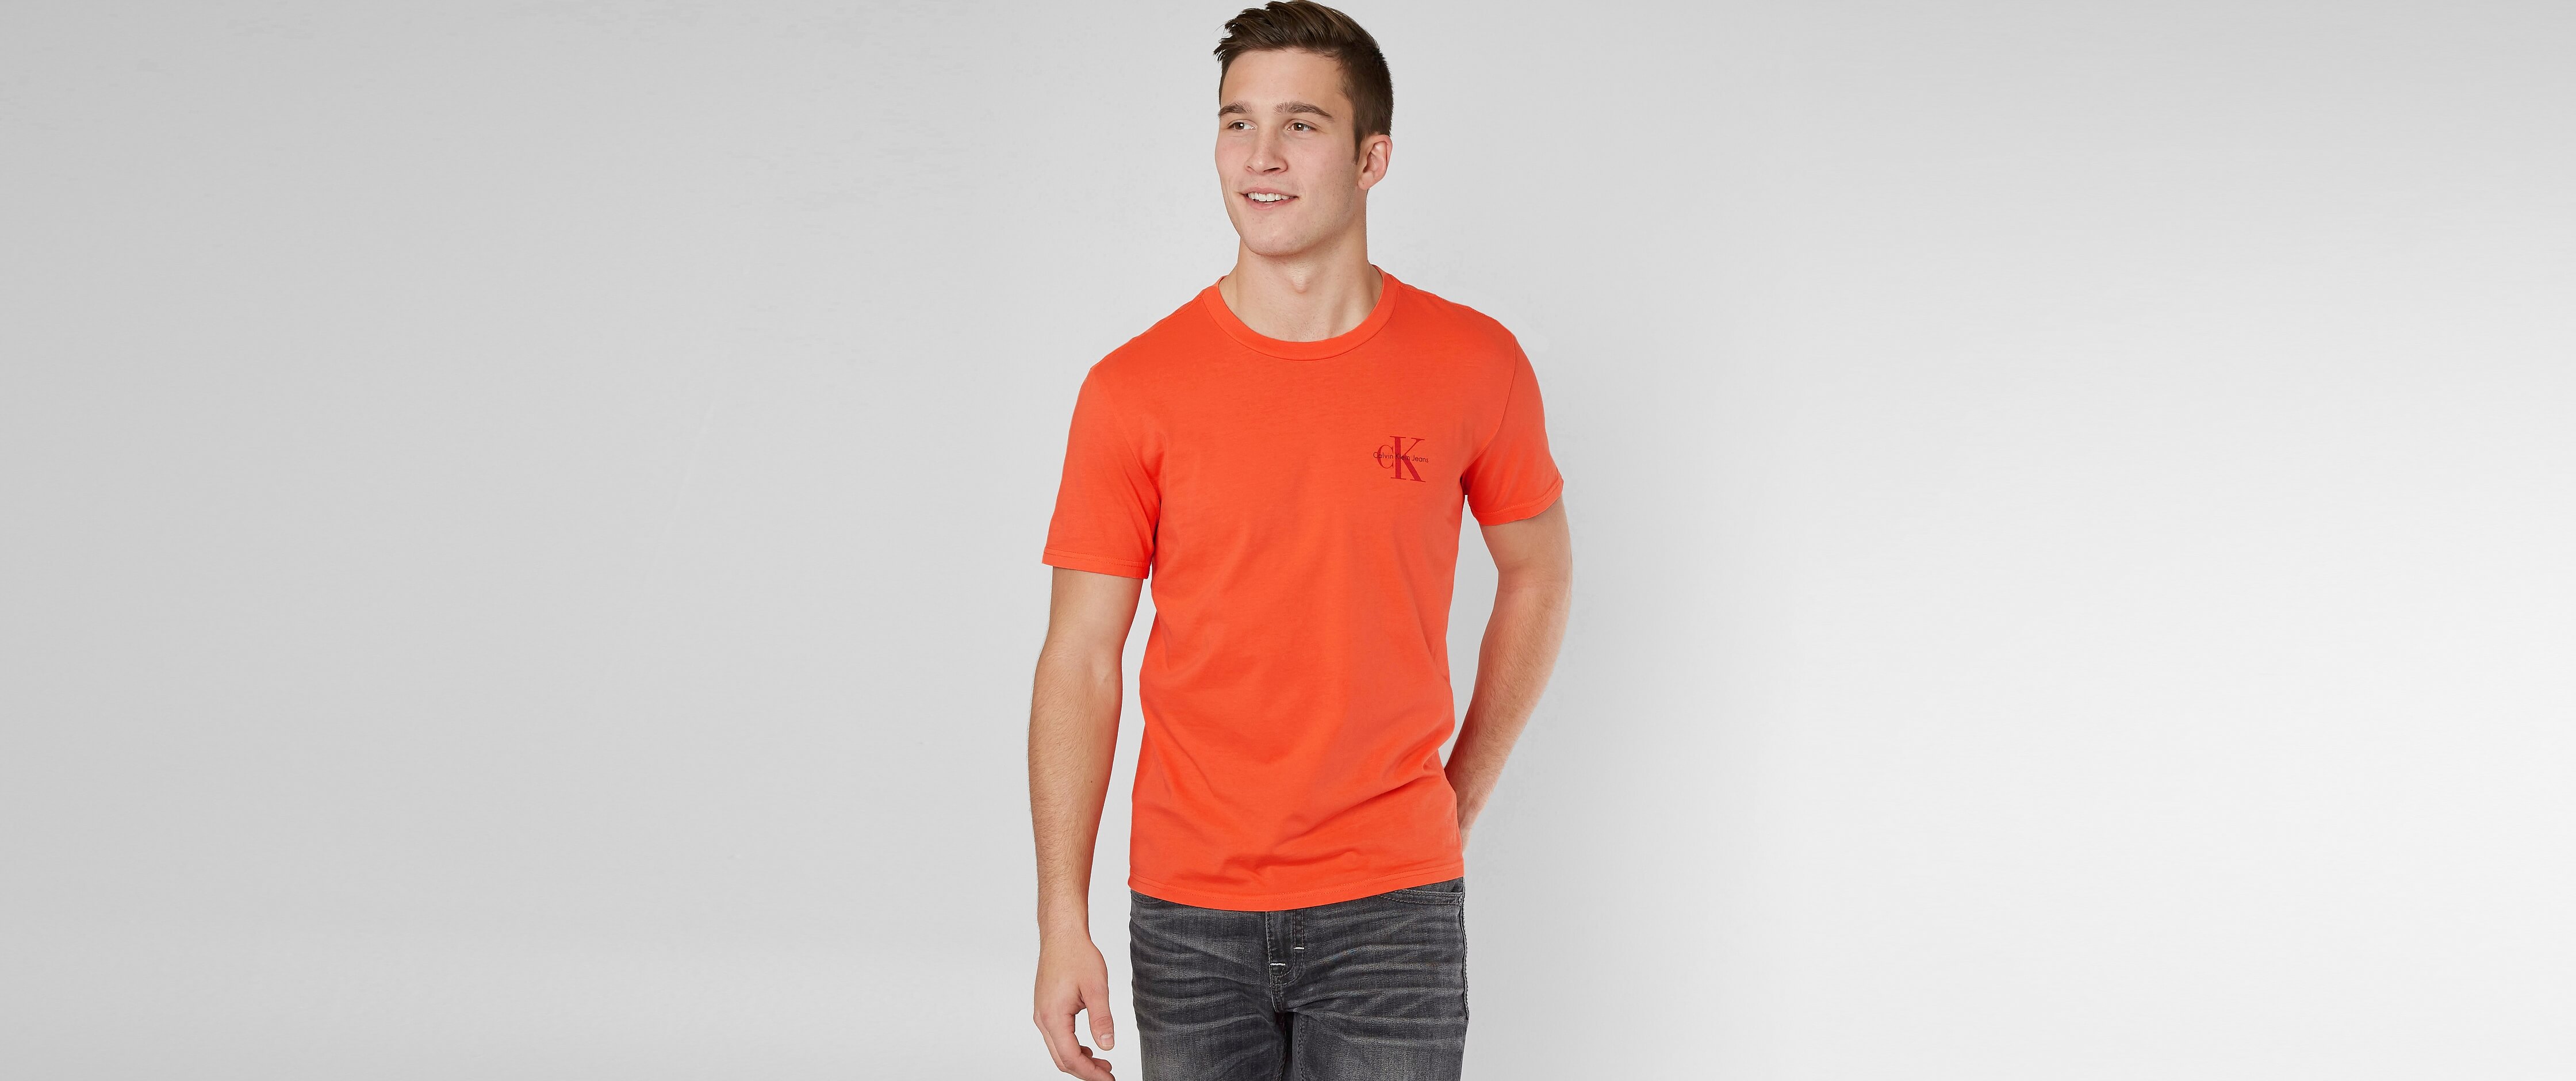 calvin klein orange t shirt